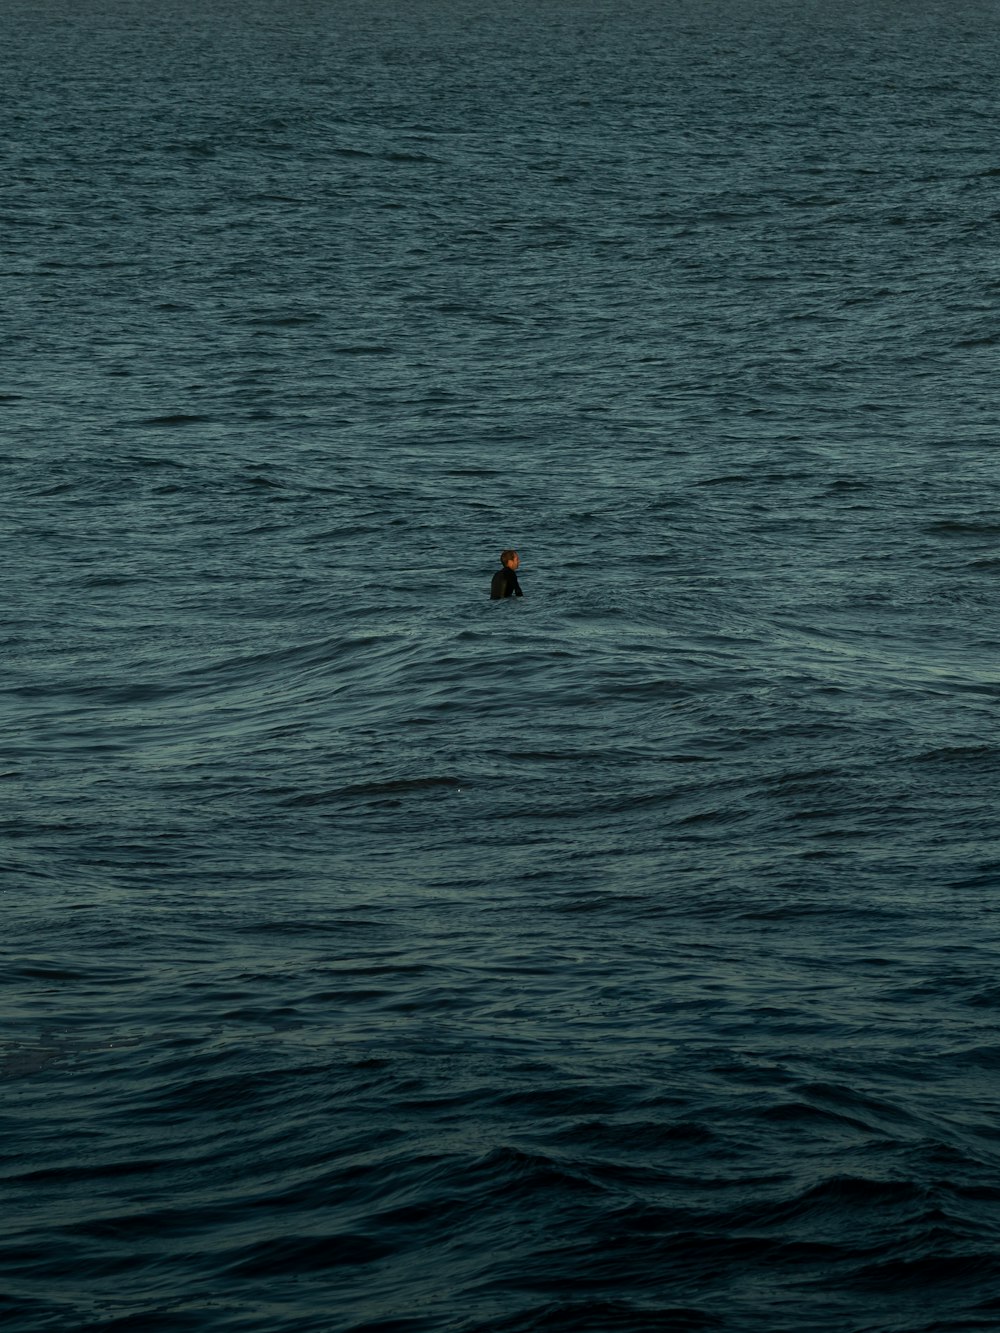 pessoa na camisa vermelha nadando no mar durante o dia